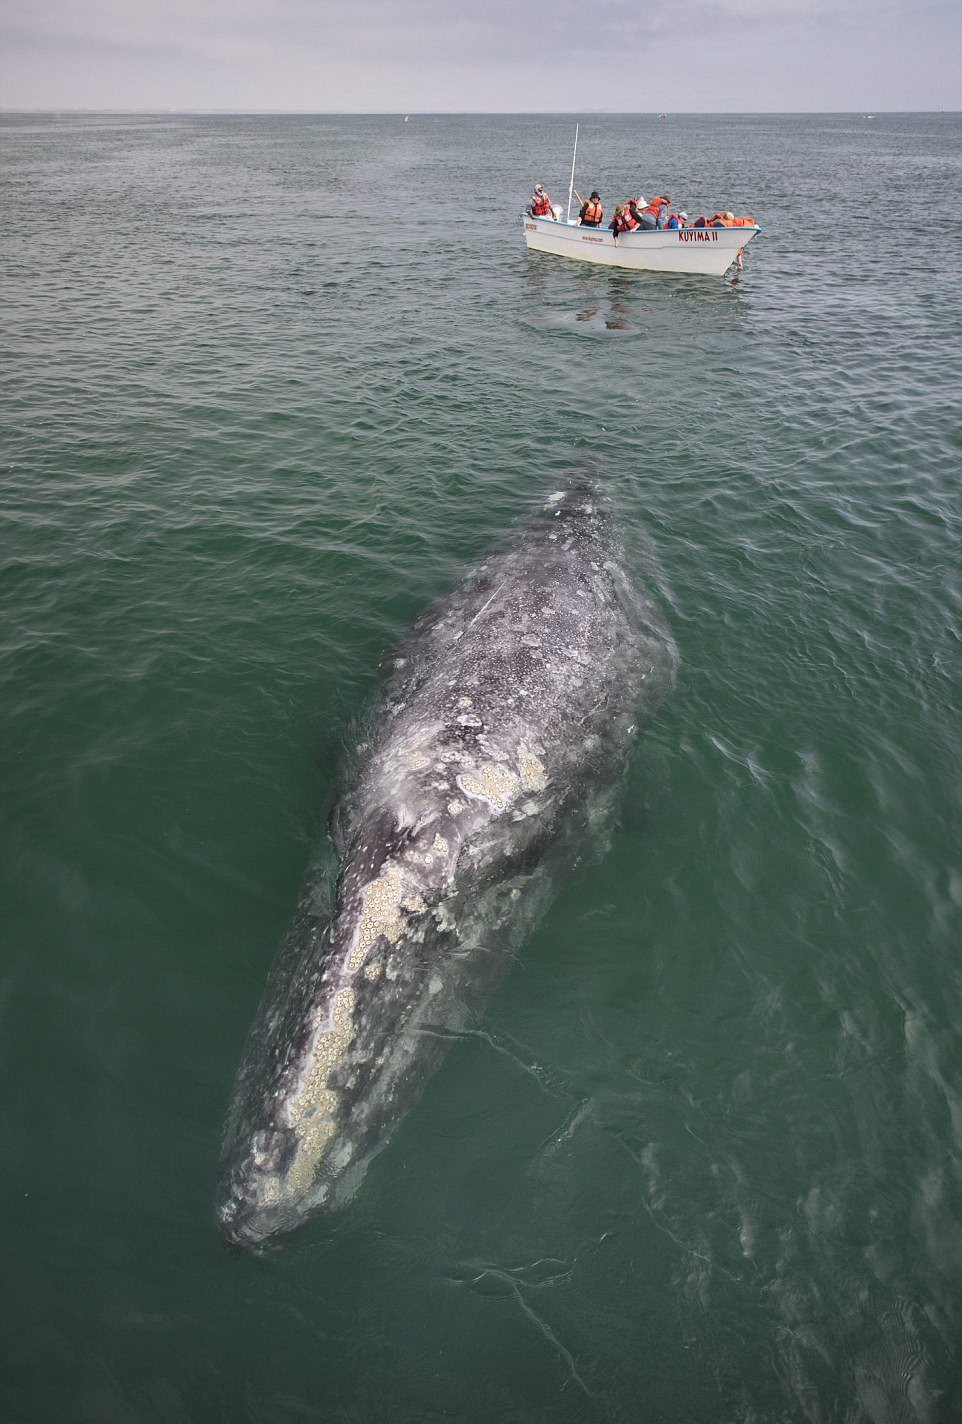 Потрясающее зрелище: туристы гладят китов